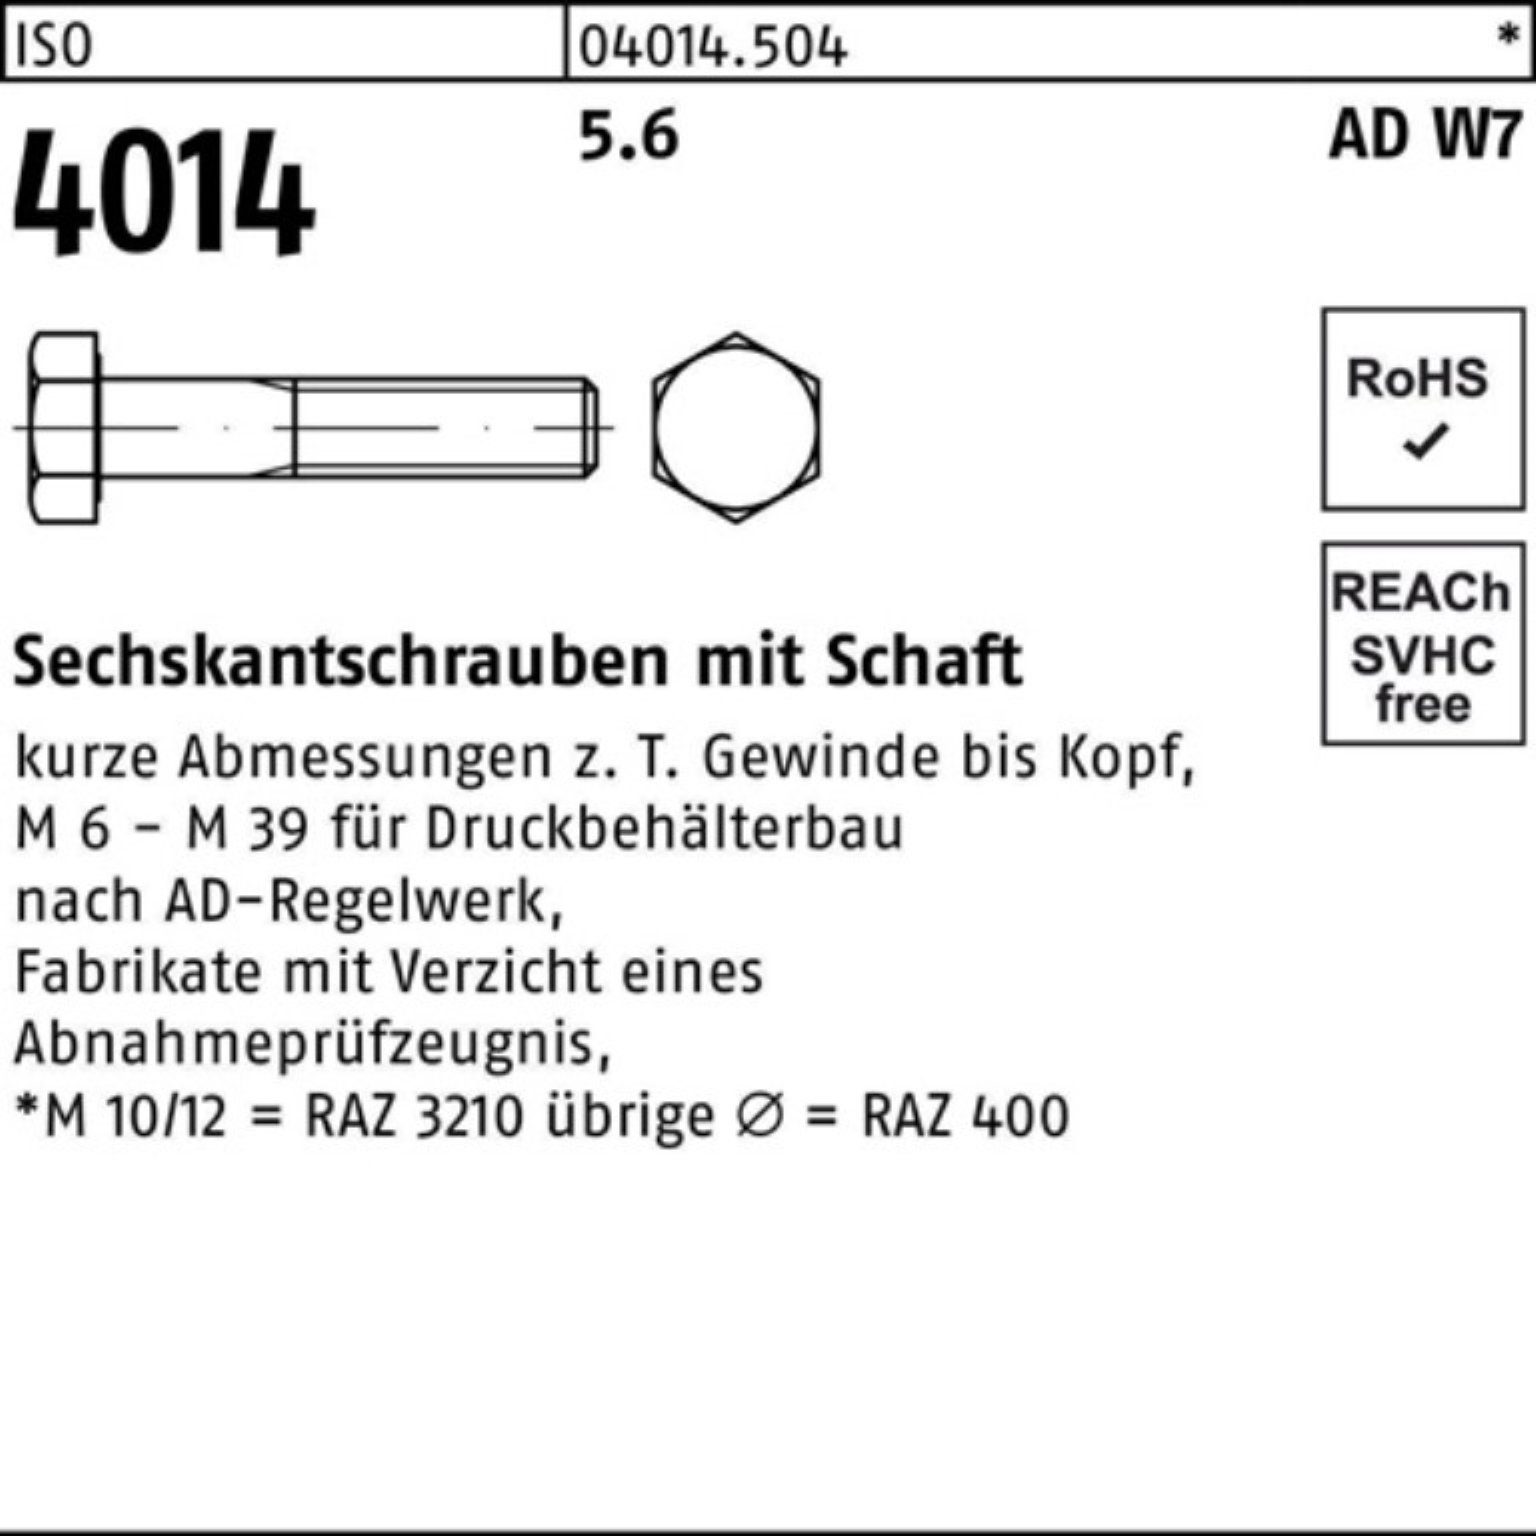 M24x W7 Bufab 4014 210 Schaft ISO Sechskantschraube 100er 5.6 Stück Pack Sechskantschraube 1